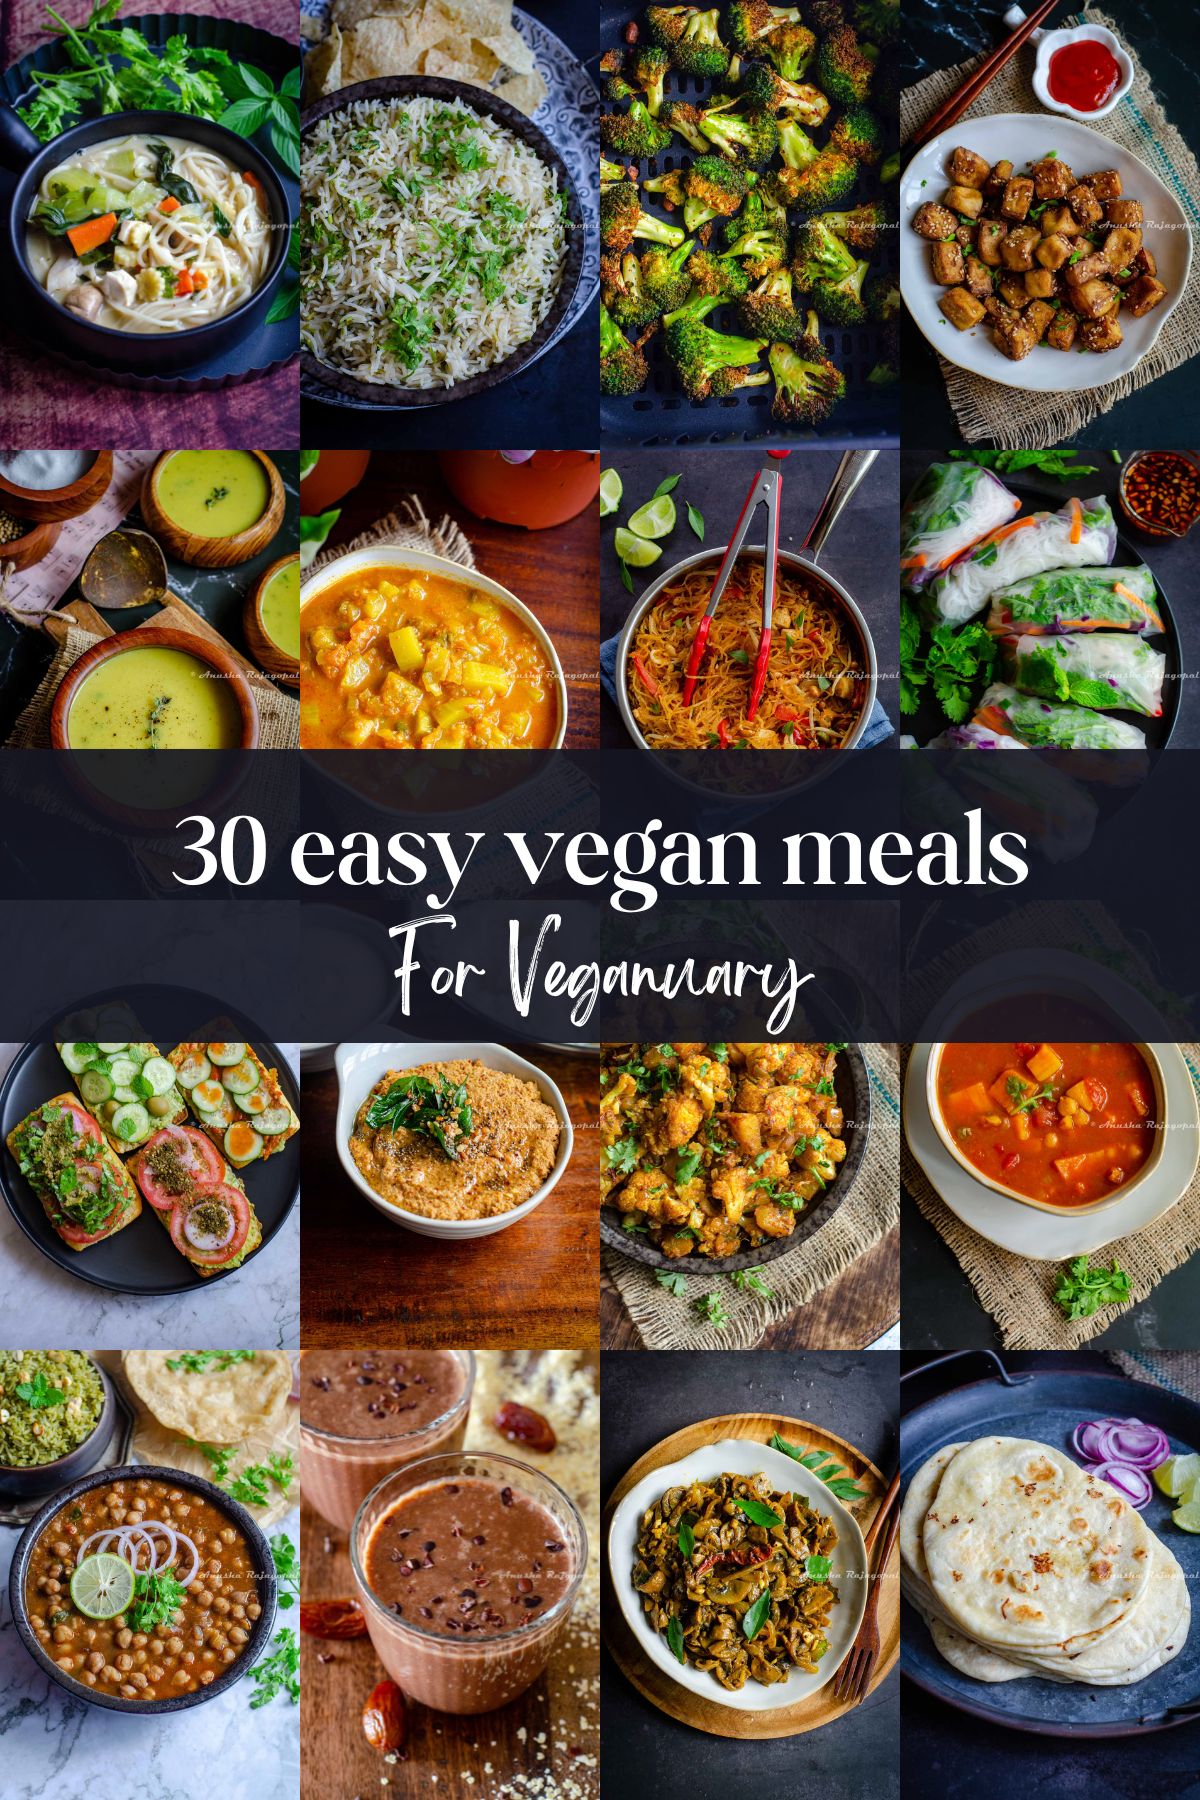 Easy vegan meal ideas for Veganuary